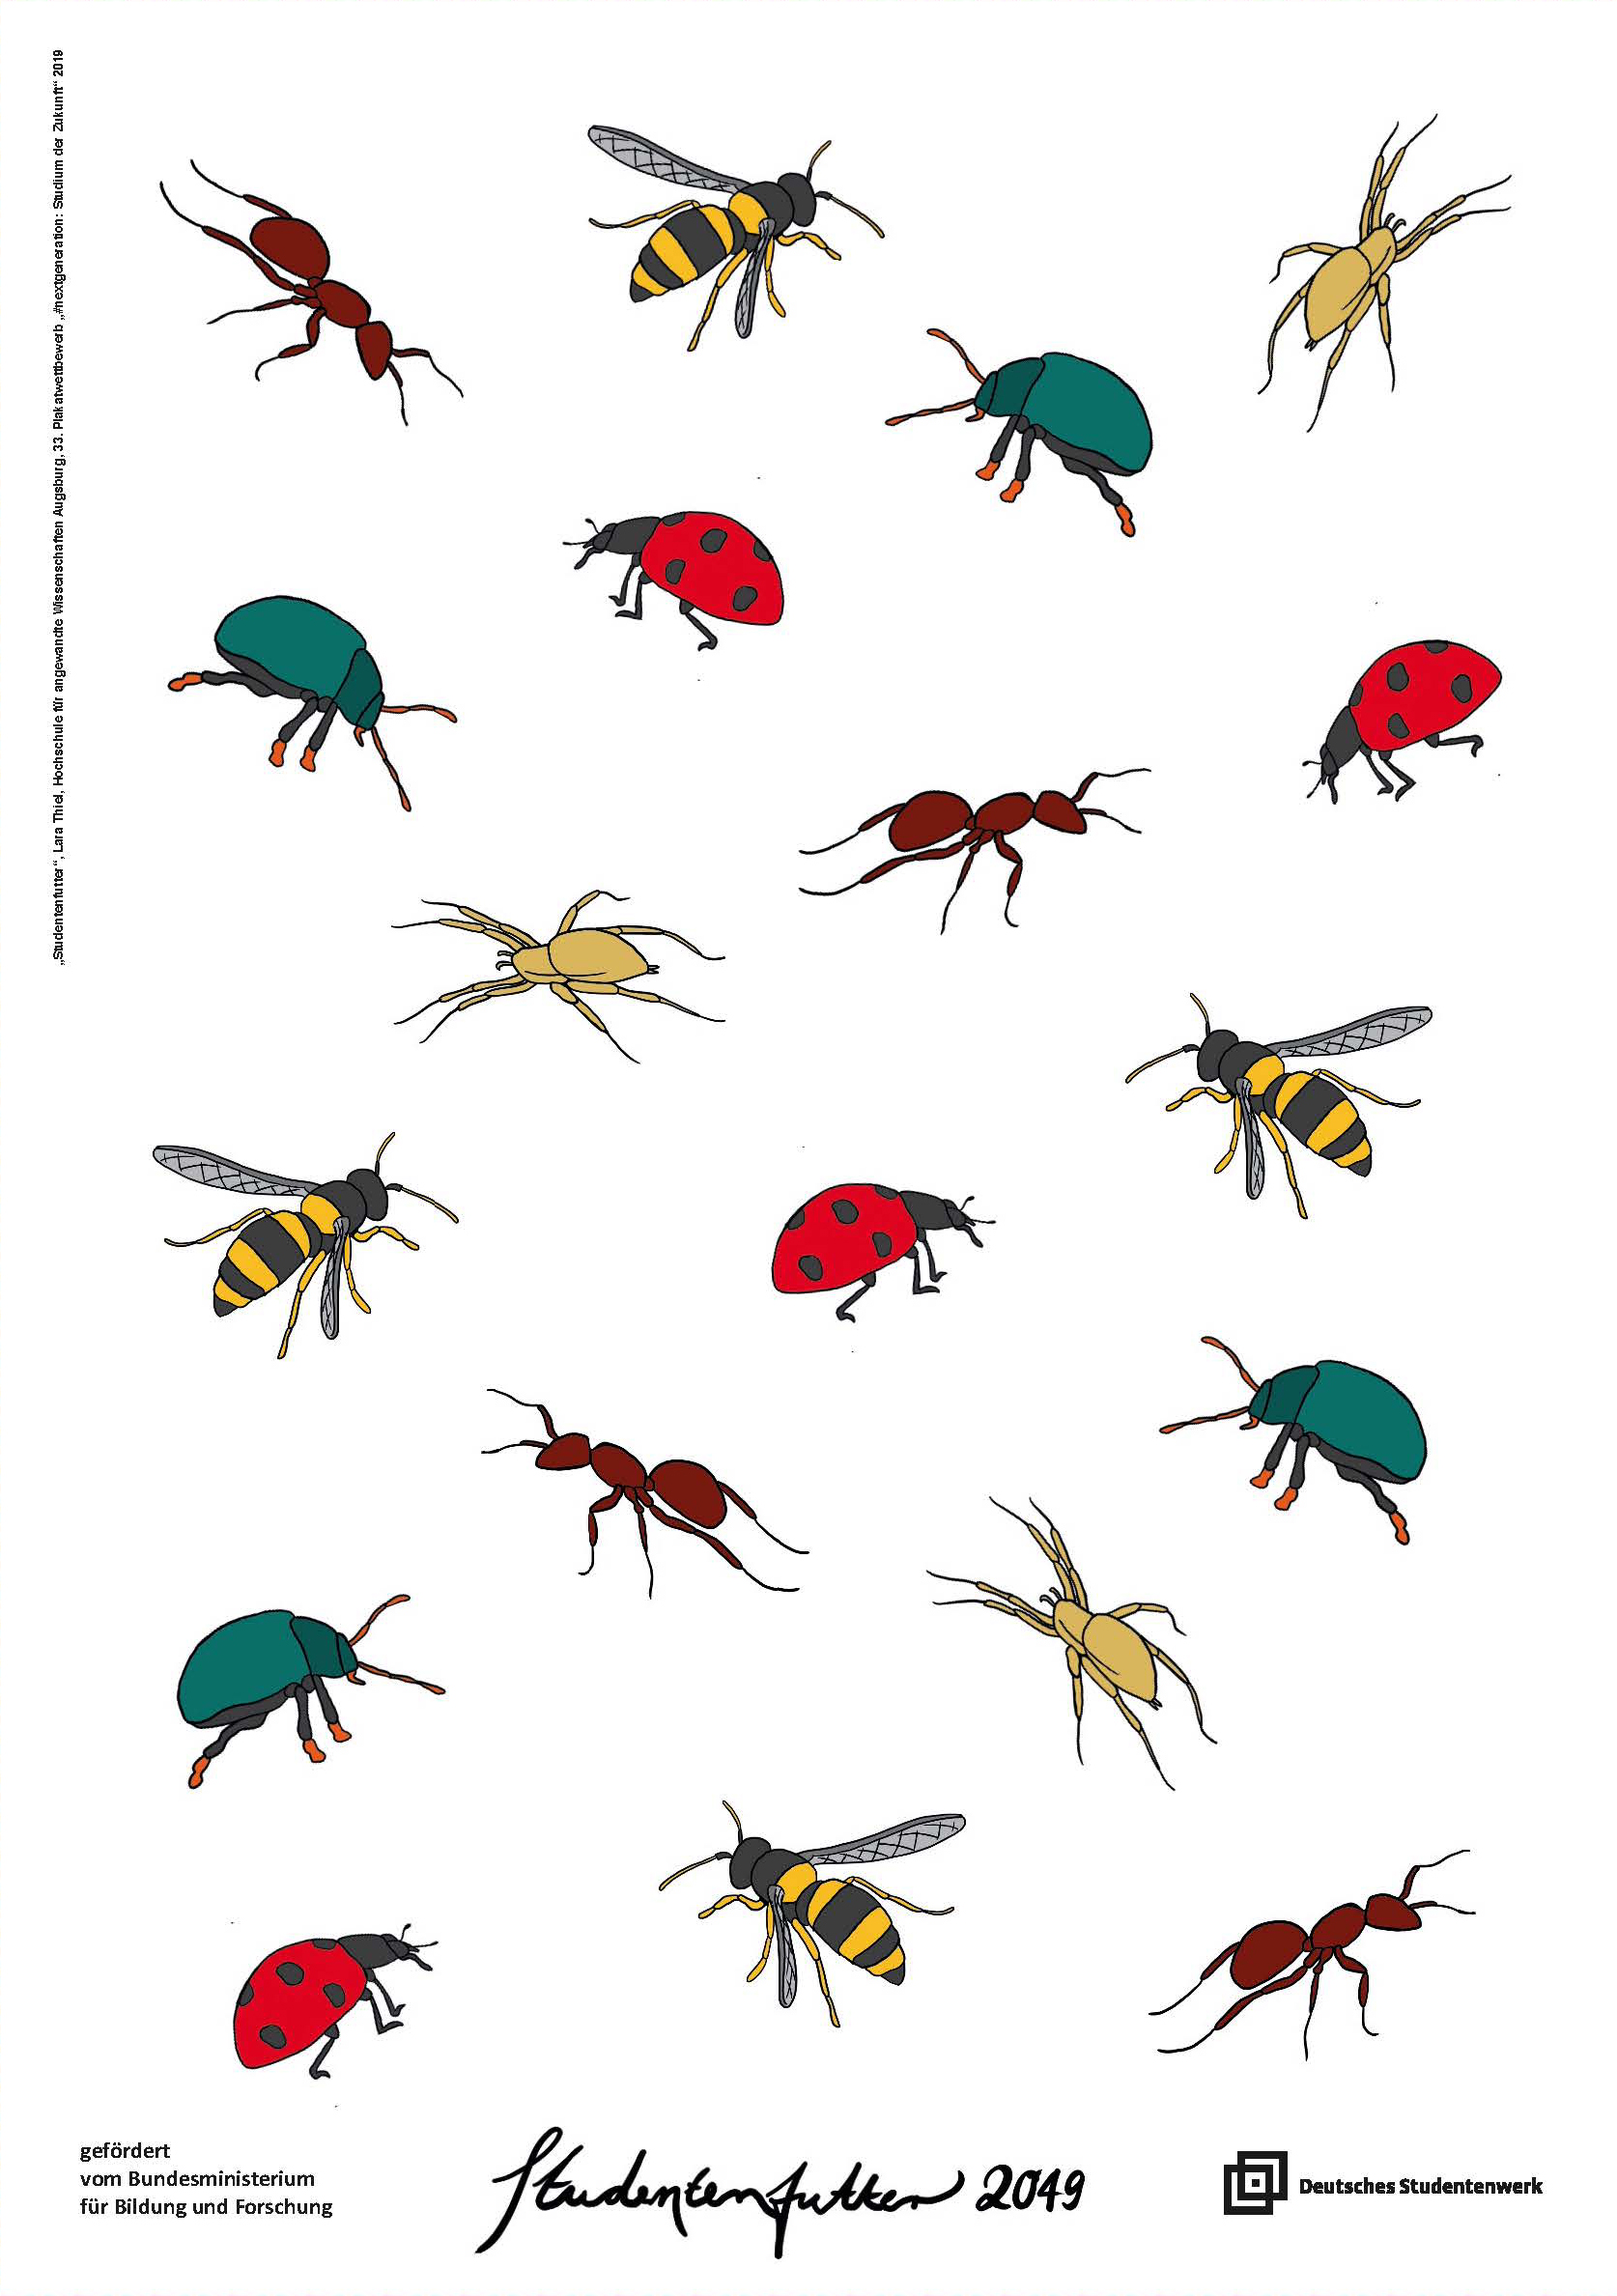 gezeichnet: 19 bunte Insekten (Marienkäfer, Ameise, Spinne, Wespe u.a.) kreuz und quer auf weißem Untergrund, Schriftzug: "Studentenfutter 2049"